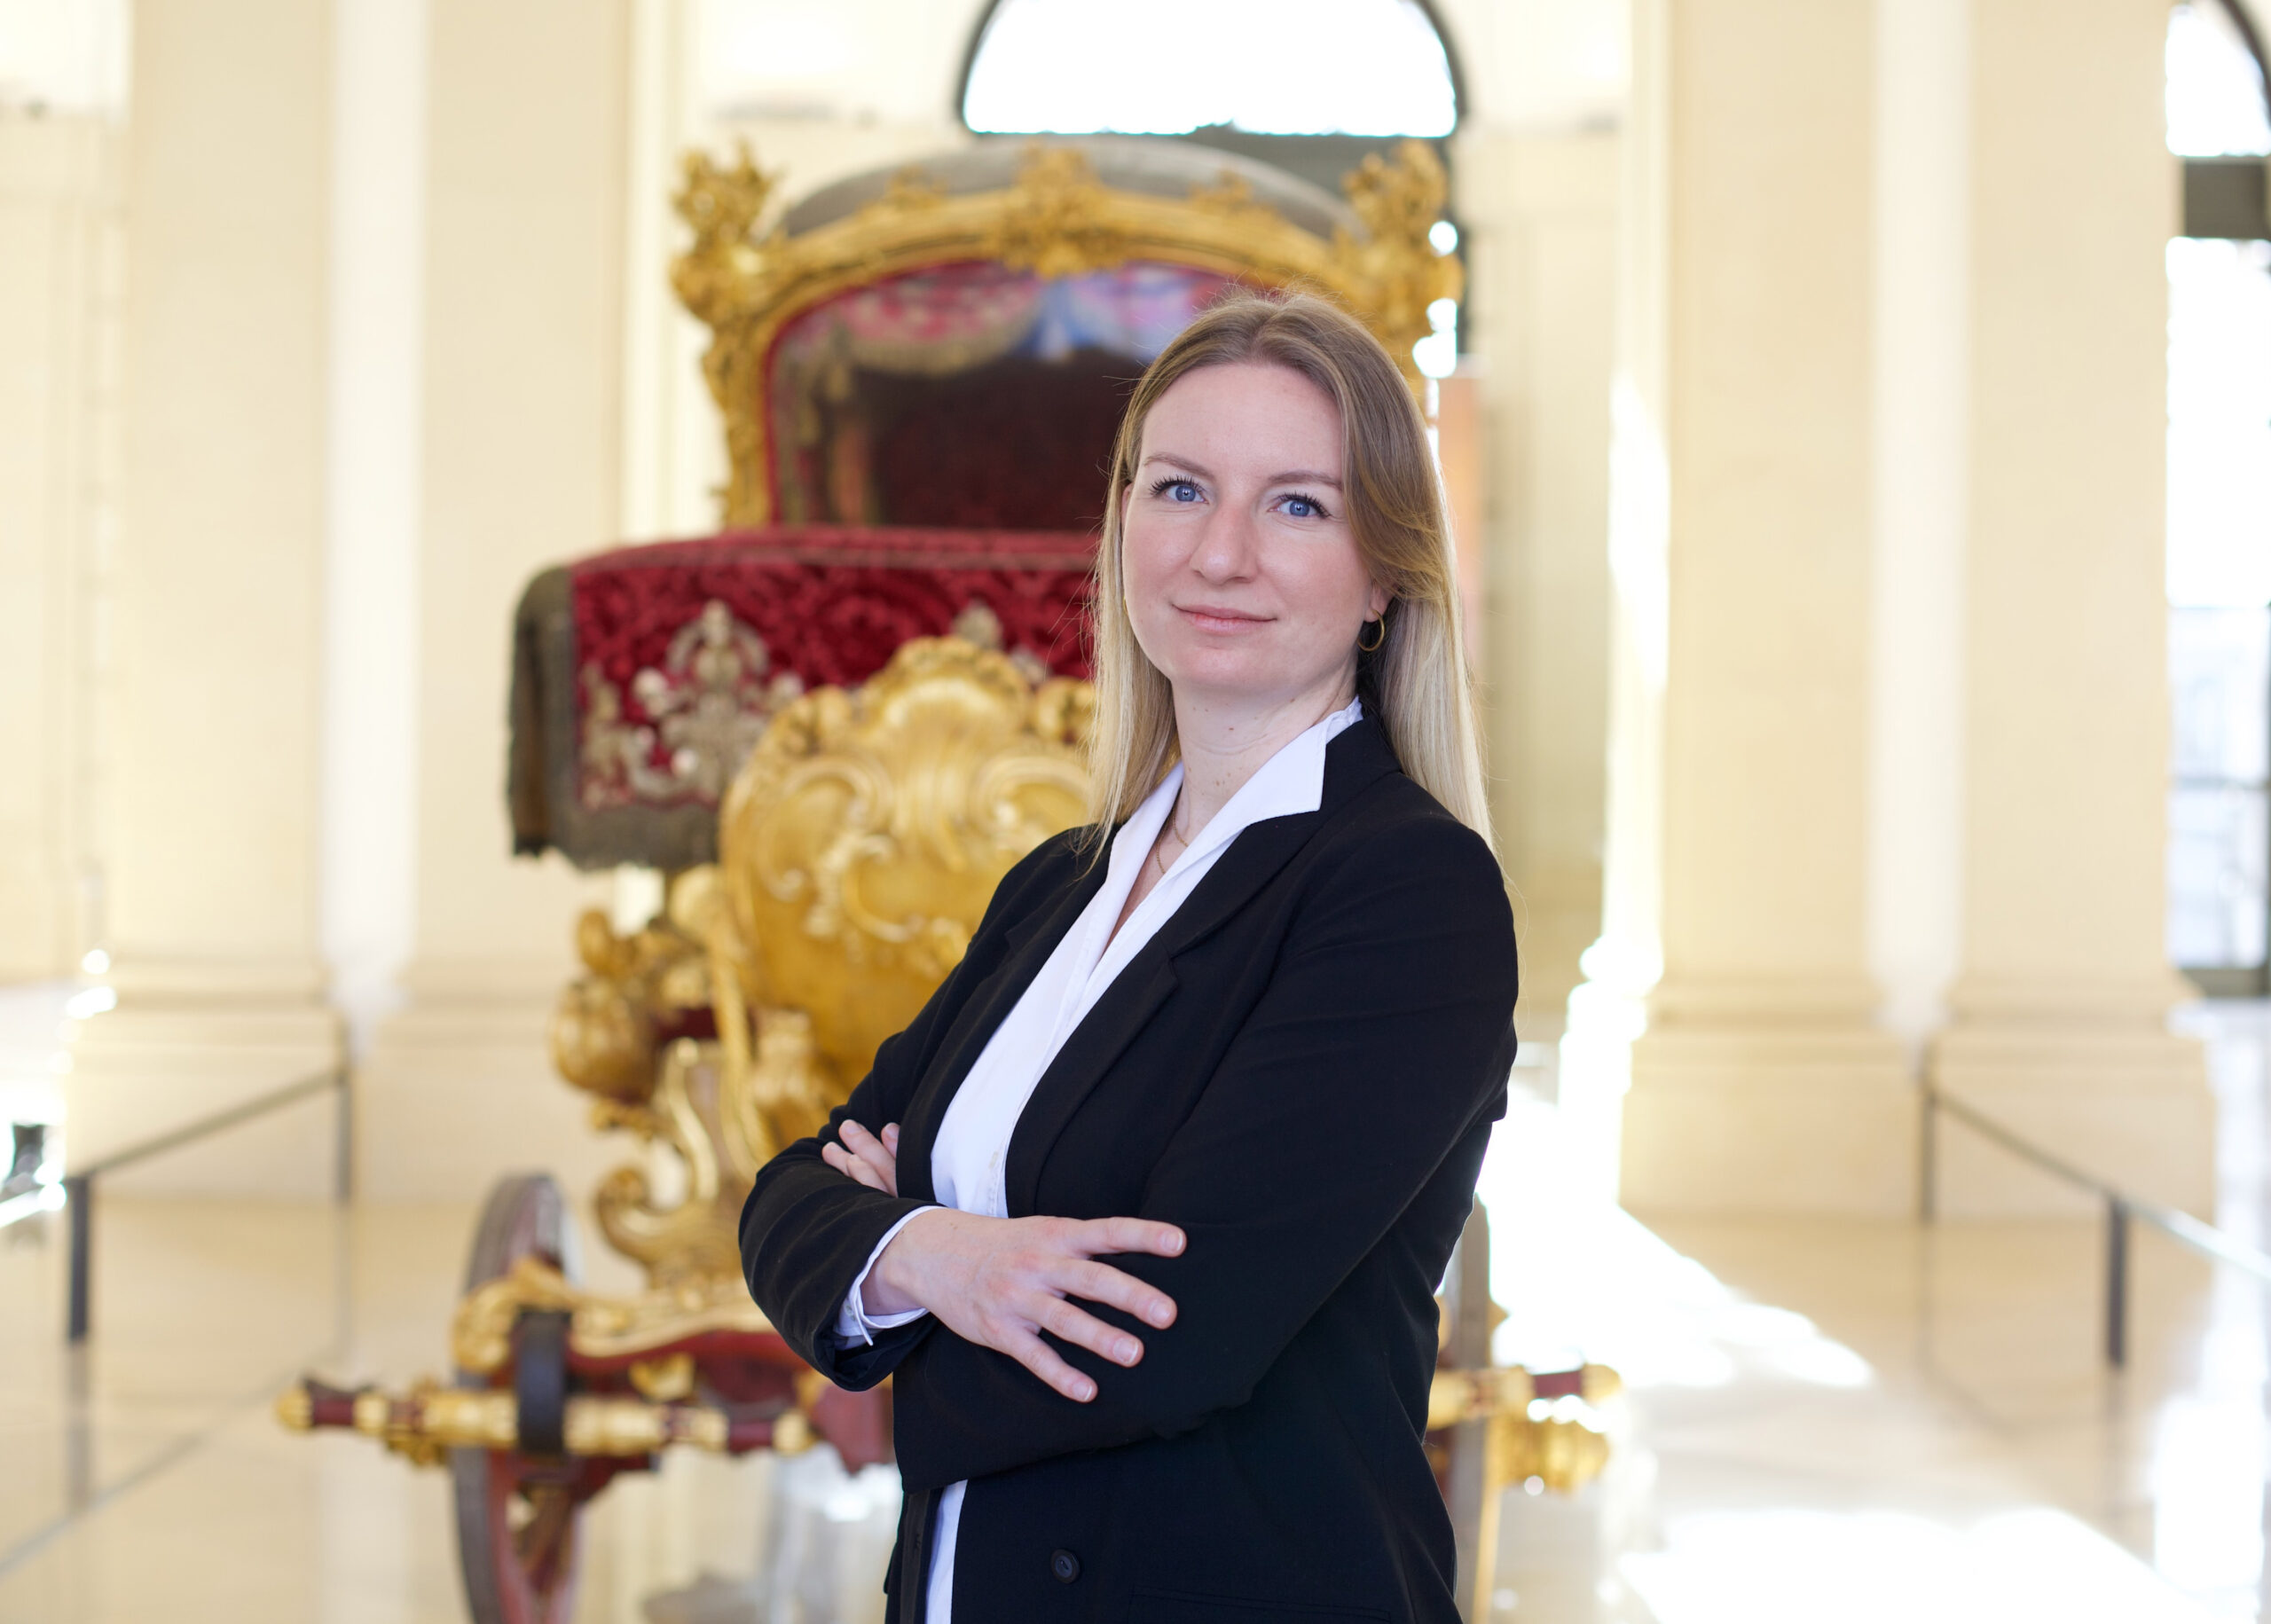 Gabriela Ogoralek übernimmt Leitung der Liechtenstein Immobilien Wien & Palais Liechtenstein